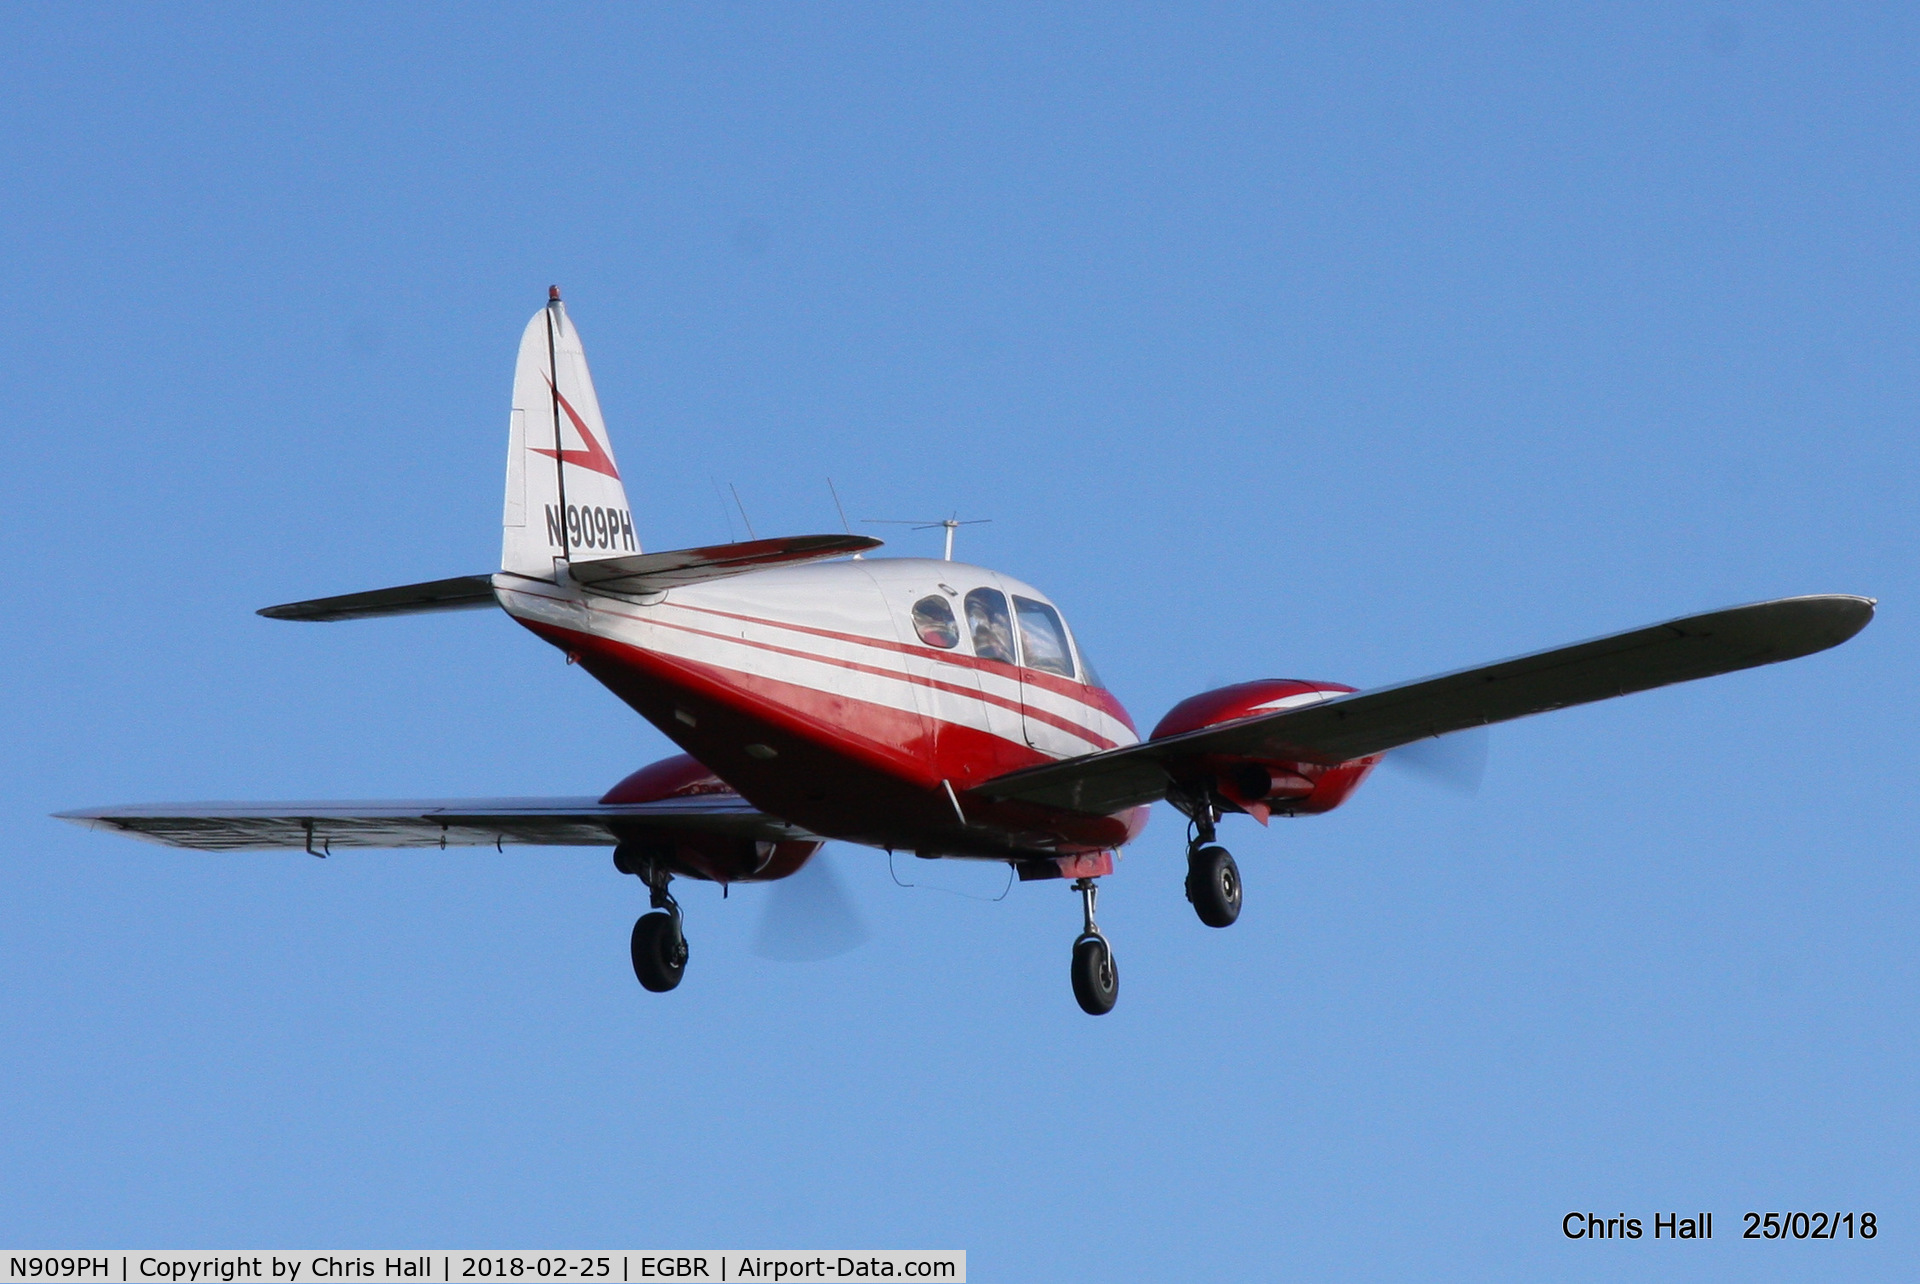 N909PH, Piper PA-23-160 Apache C/N 23-1800, at Breighton